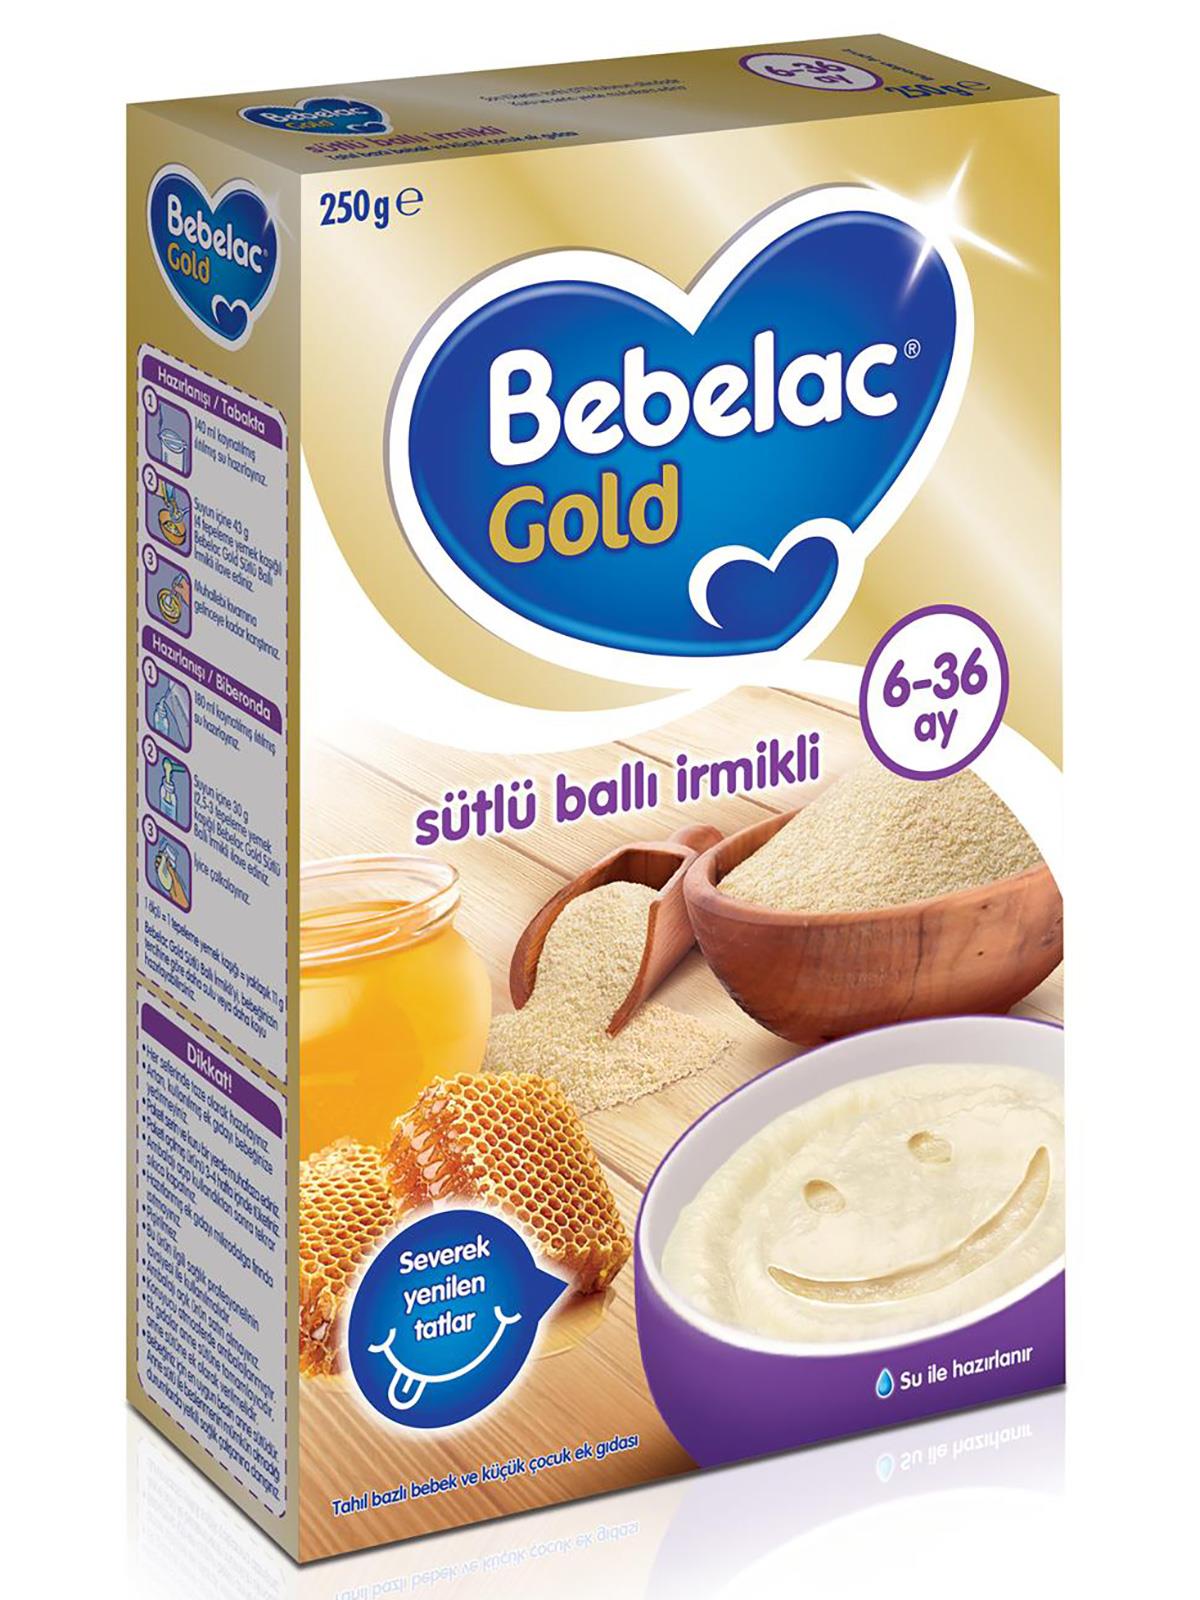 Bebelac Gold Sütlü Ballı İrmikli Tahıl Bazlı Kaşık Maması 250 g 6-36 Ay 